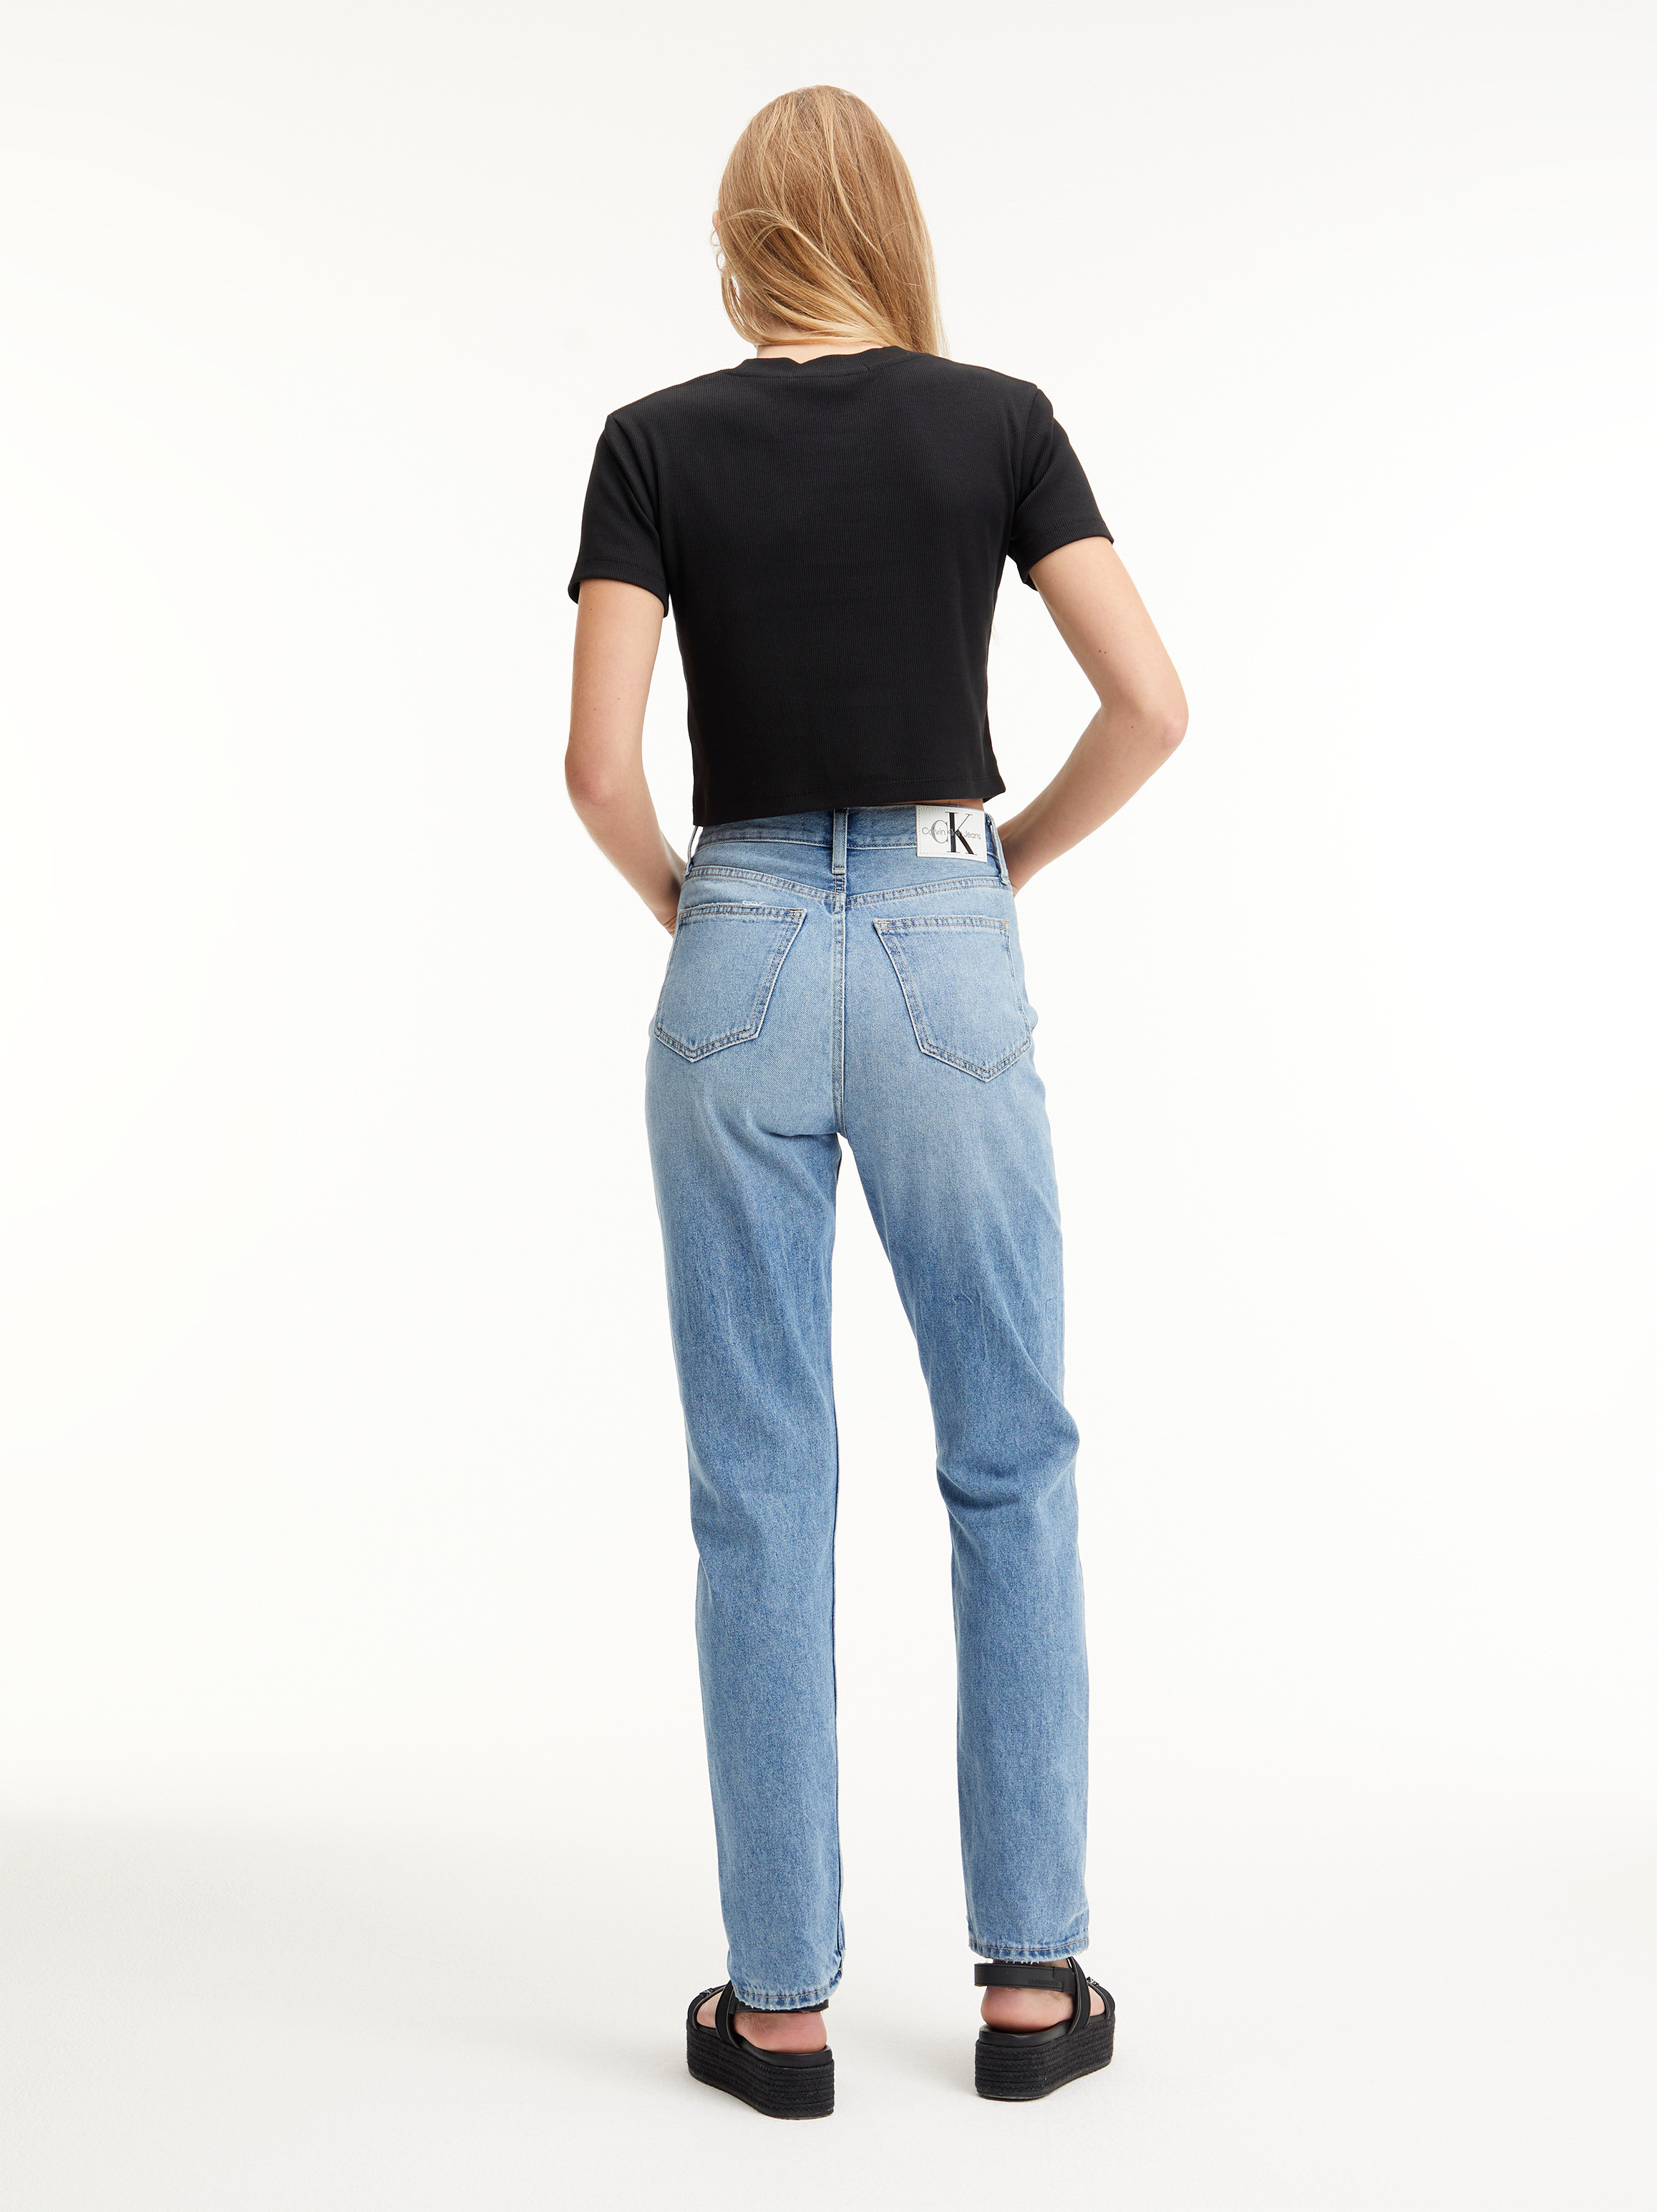 Calvin Klein Jeans -Slim fit five pocket jeans, Denim, large image number 4